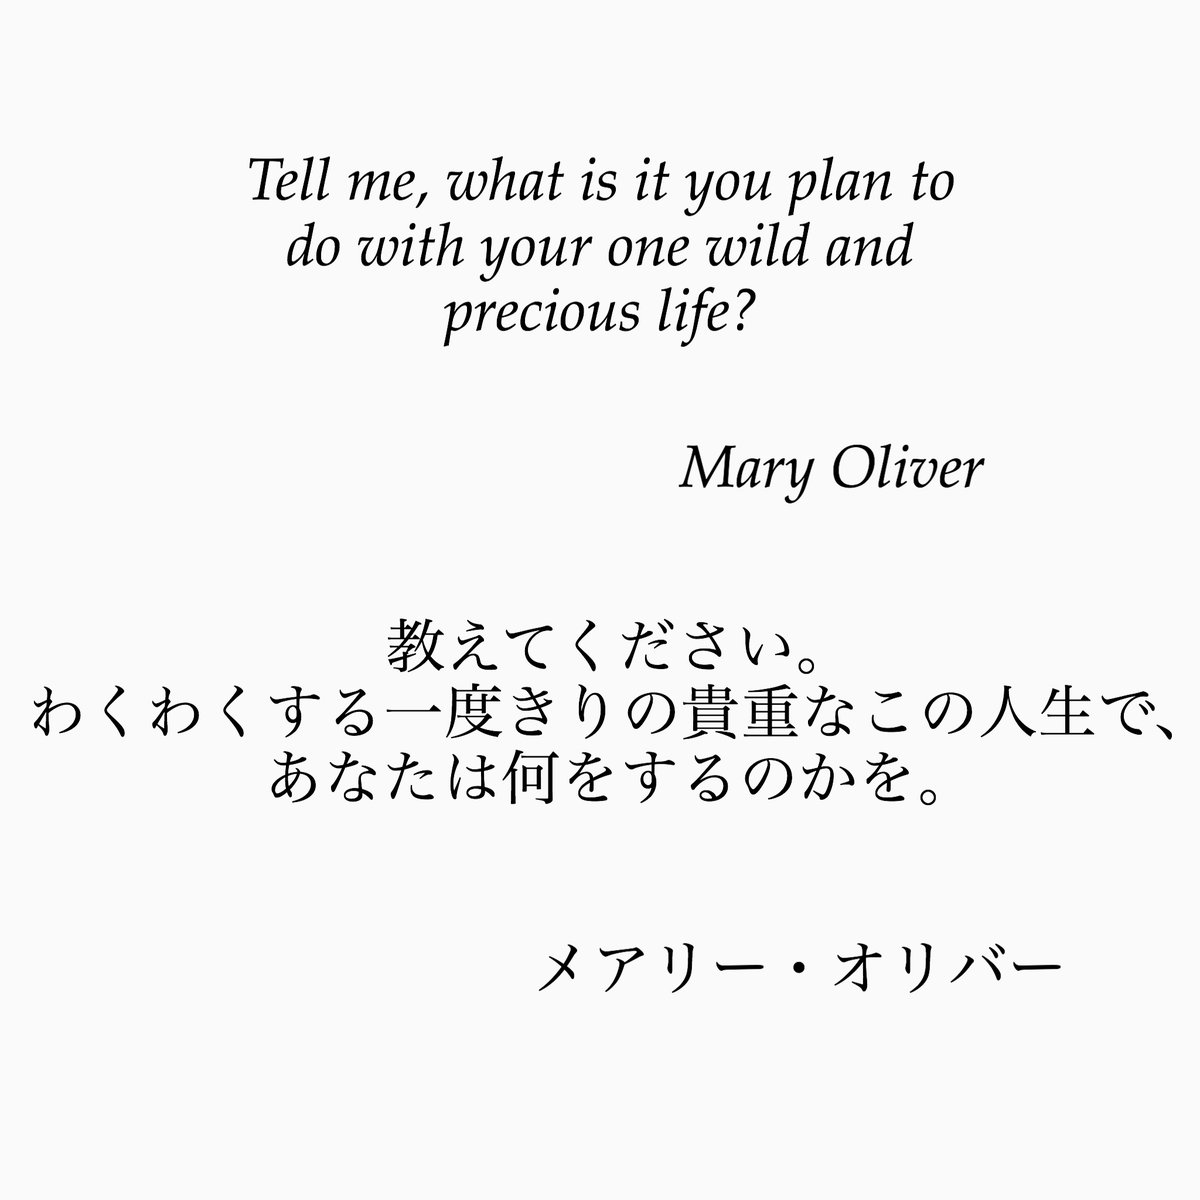 ゆったり名言書写 En Twitter No 45 本日の名言は 米国の詩人メアリー オリバーの言葉です この言葉は ハーバード大学の卒業式でも引用されました ゆったり名言書写